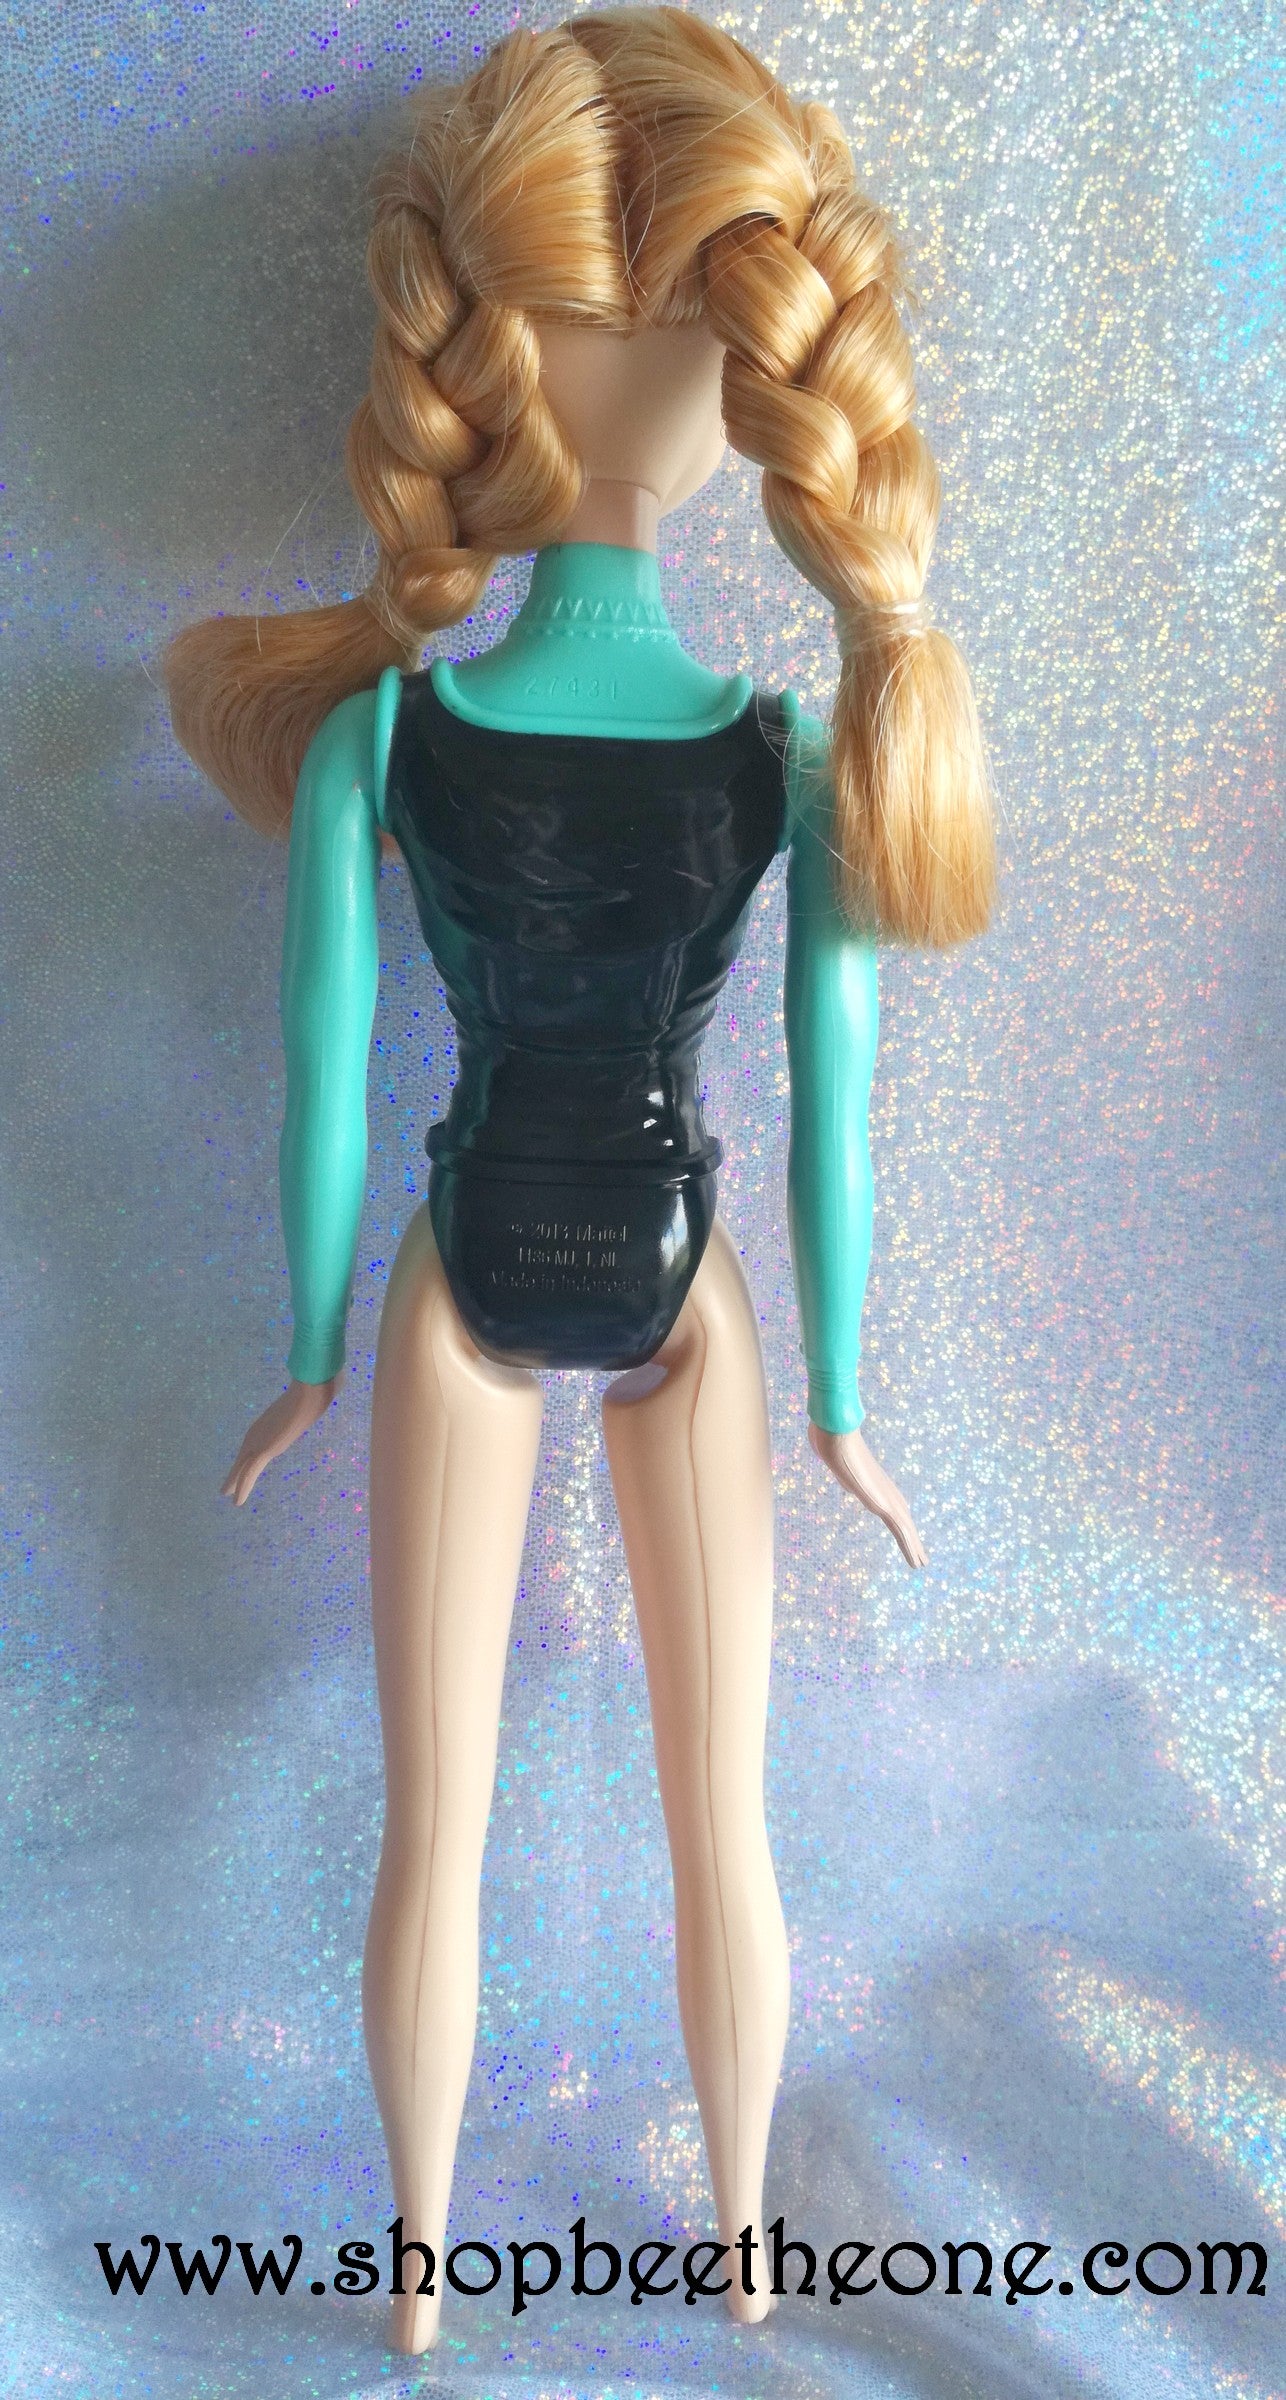 Princesse Jasmine à coiffer - Simba Toys 2000s - Poupée - Vêtement